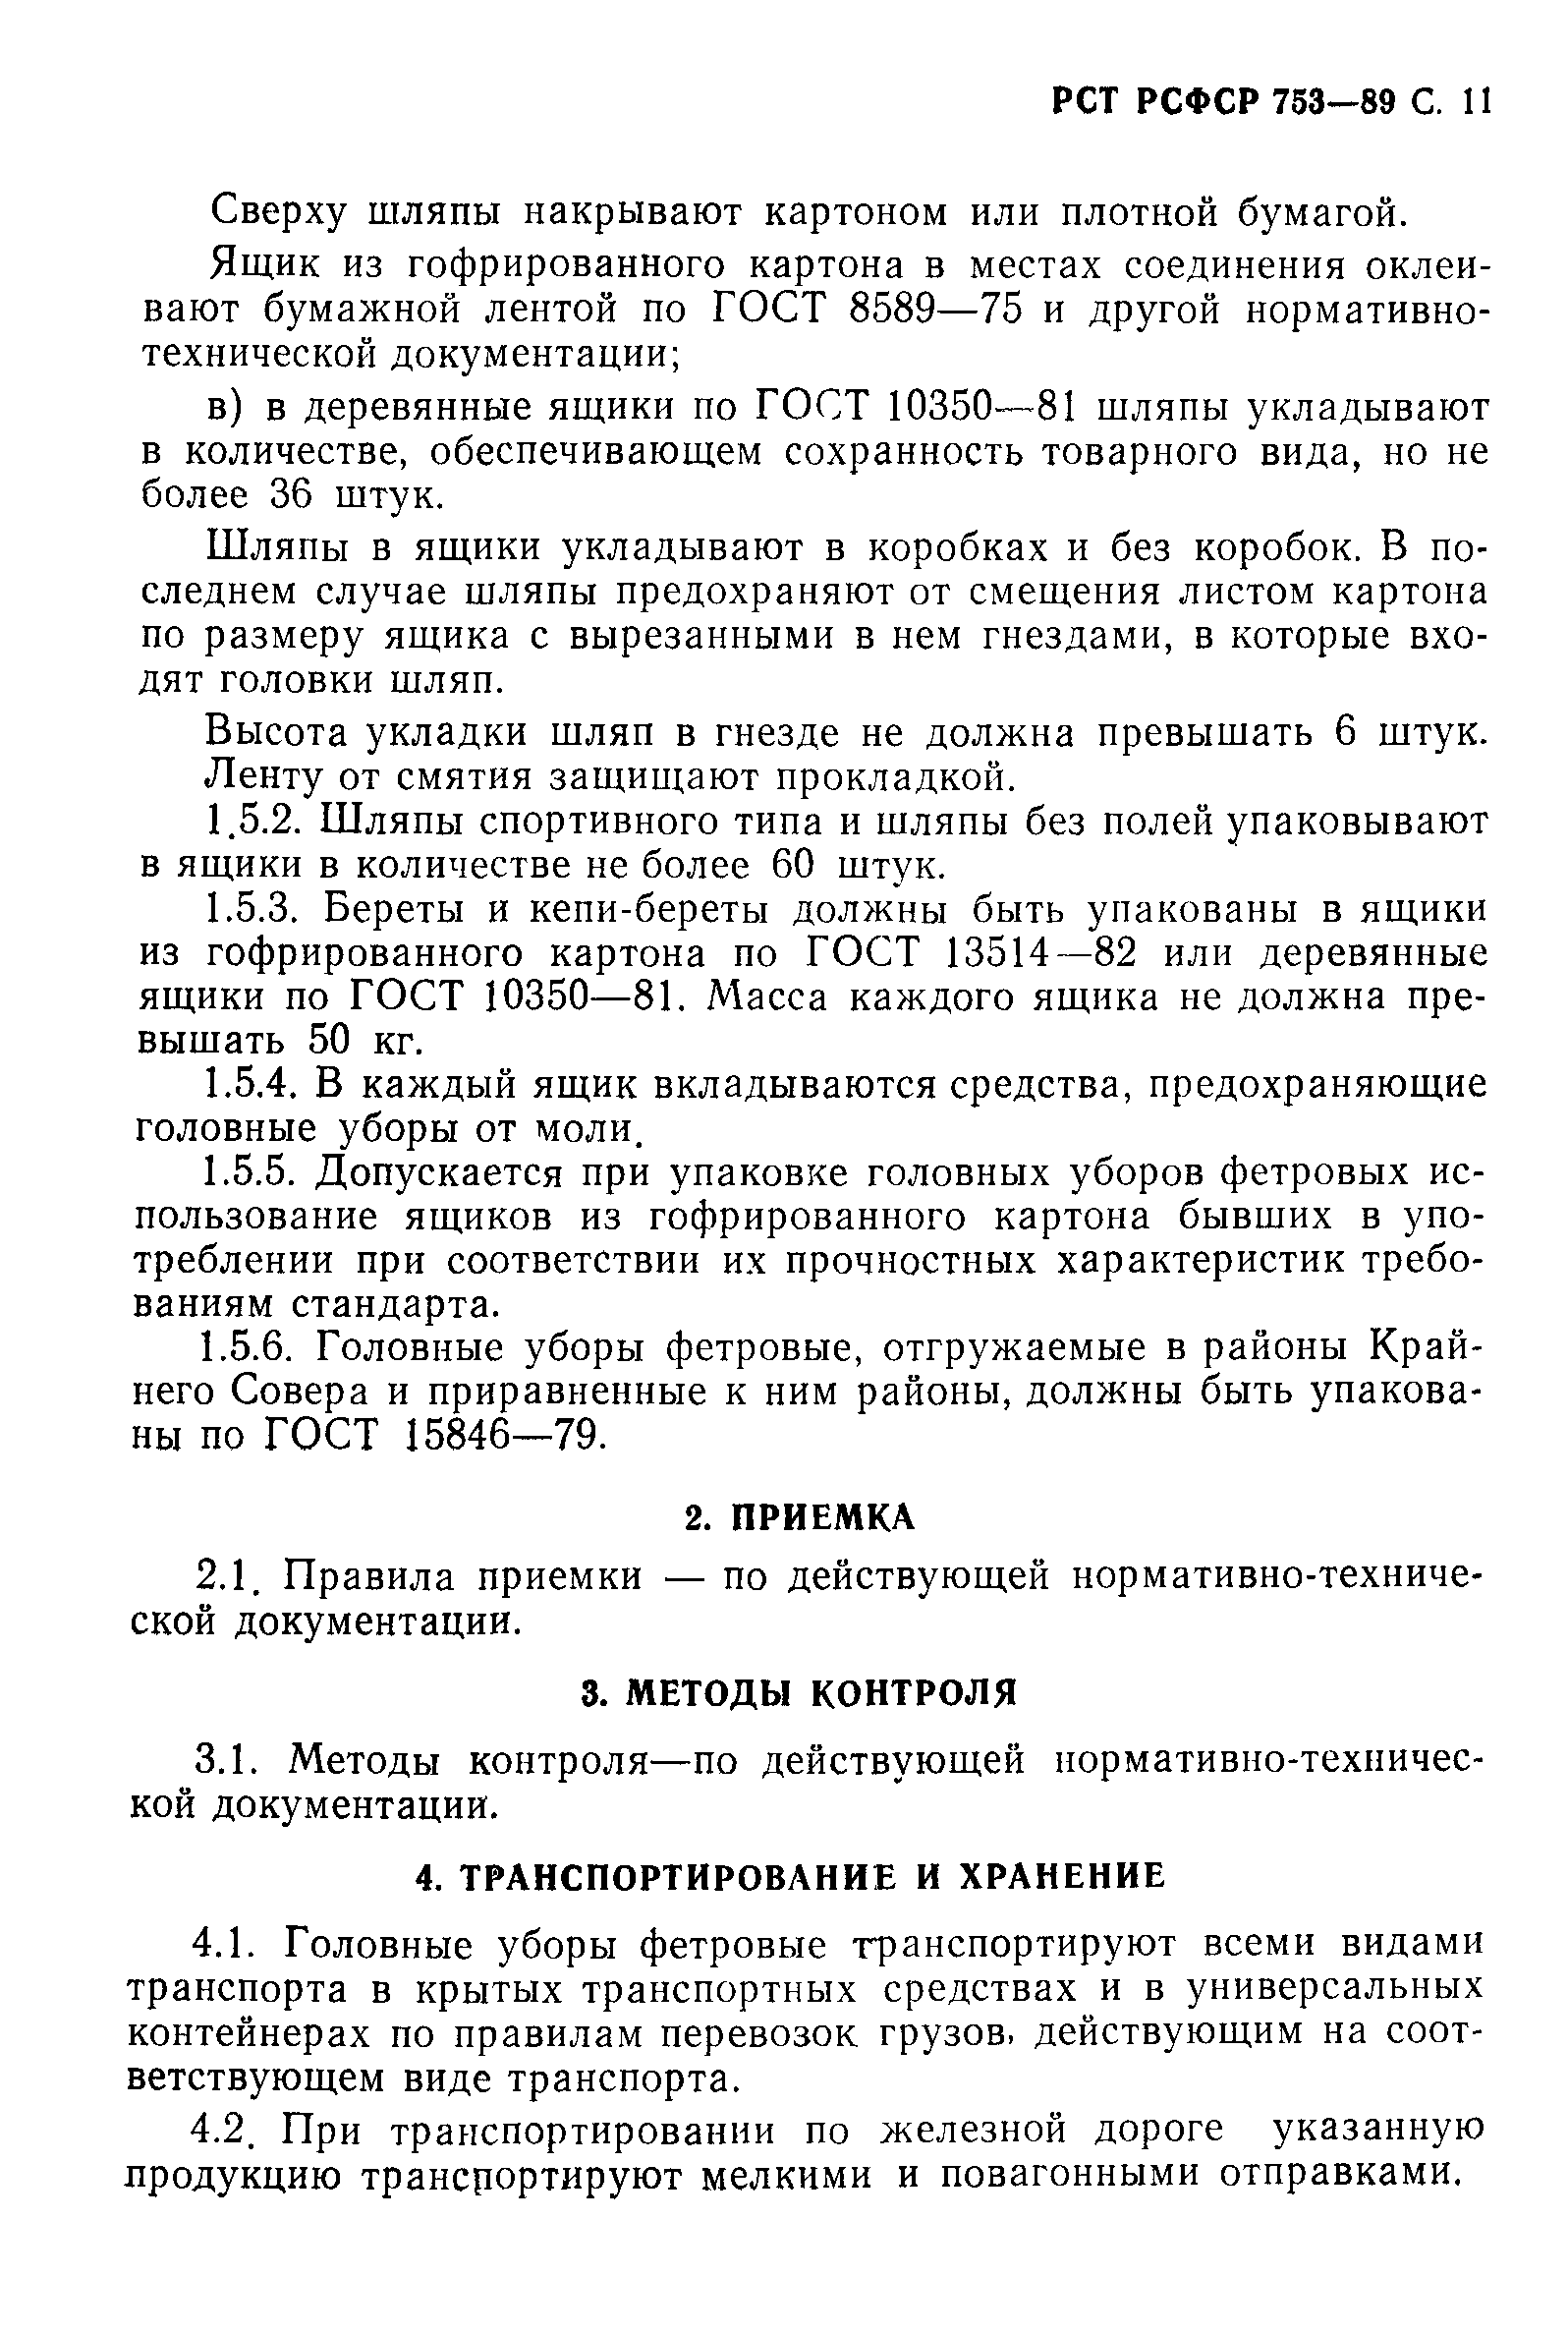 РСТ РСФСР 753-89